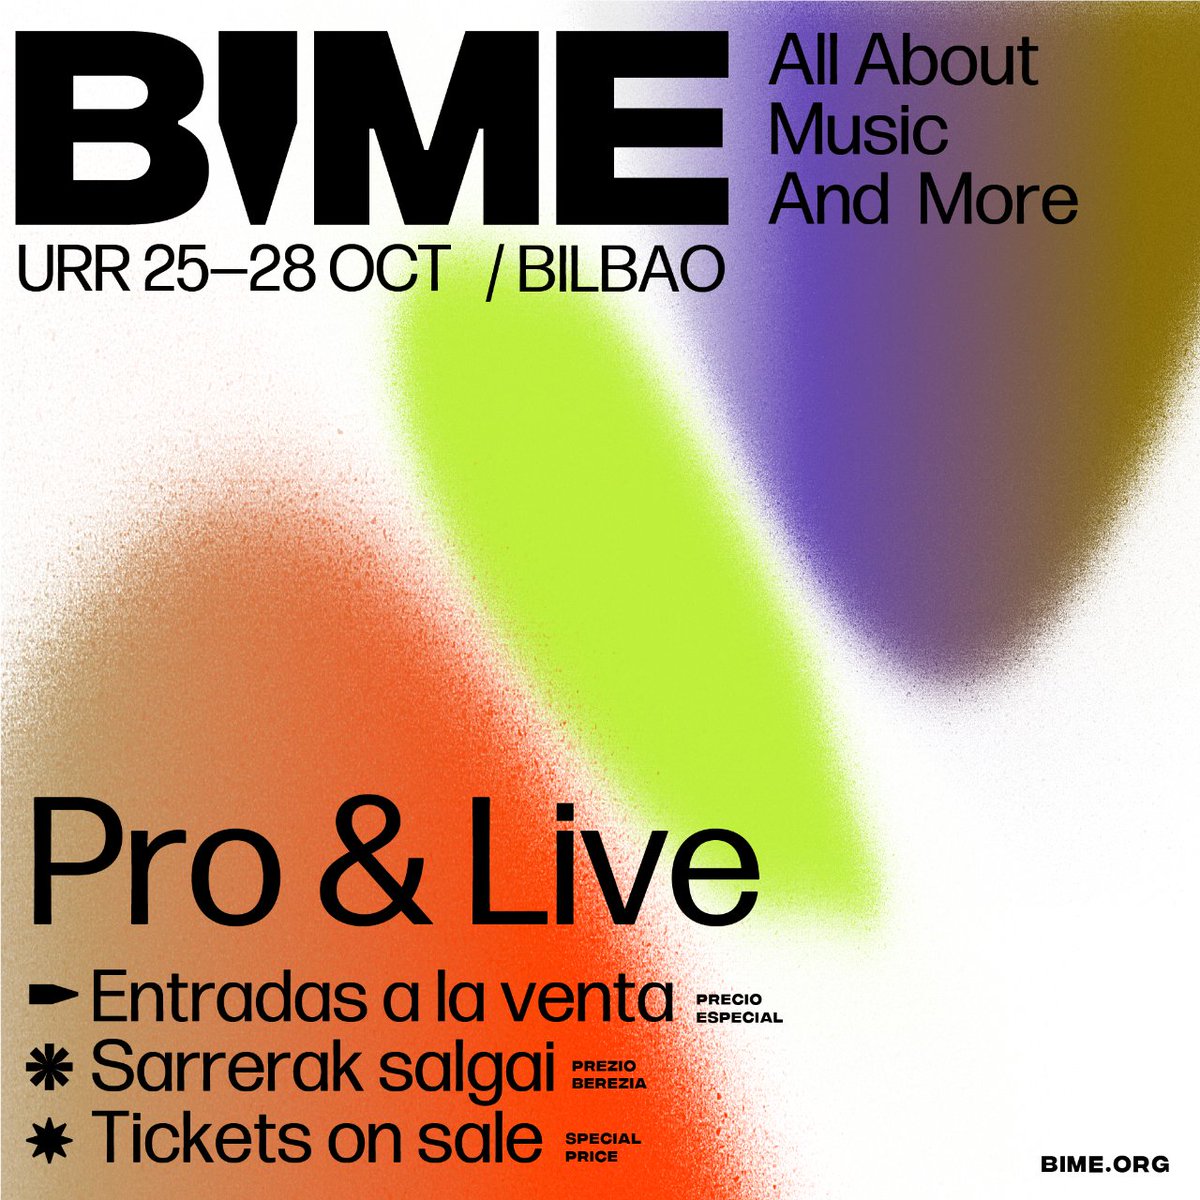 📢Tras su consagración en América, ¡@BIMEnet_ vuelve a Bilbao el próximo otoño! 🟠El gran encuentro internacional de la #industriamusical celebrará su undécima edición en #Bilbao del 25 al 28 de octubre. 🔗Consulta el programa y hazte con tus entradas bime.org